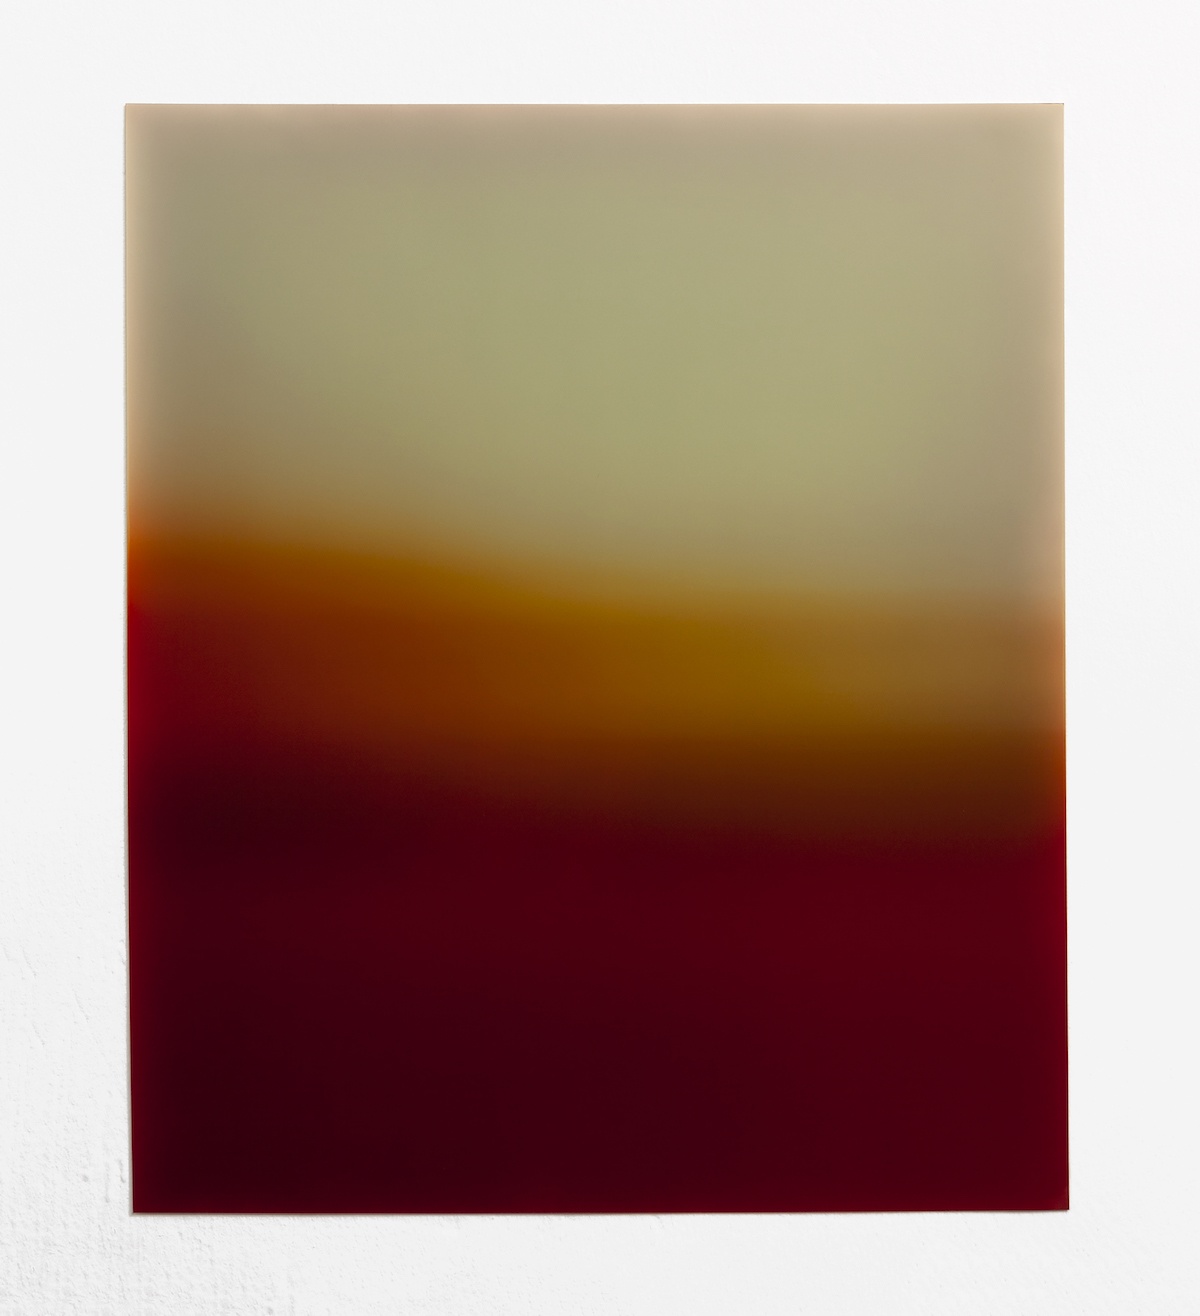 Laure Tiberghien, Fuites#8, 2021, Tirage chromogène unique, 60 x 50 cm, Collection de la BnF